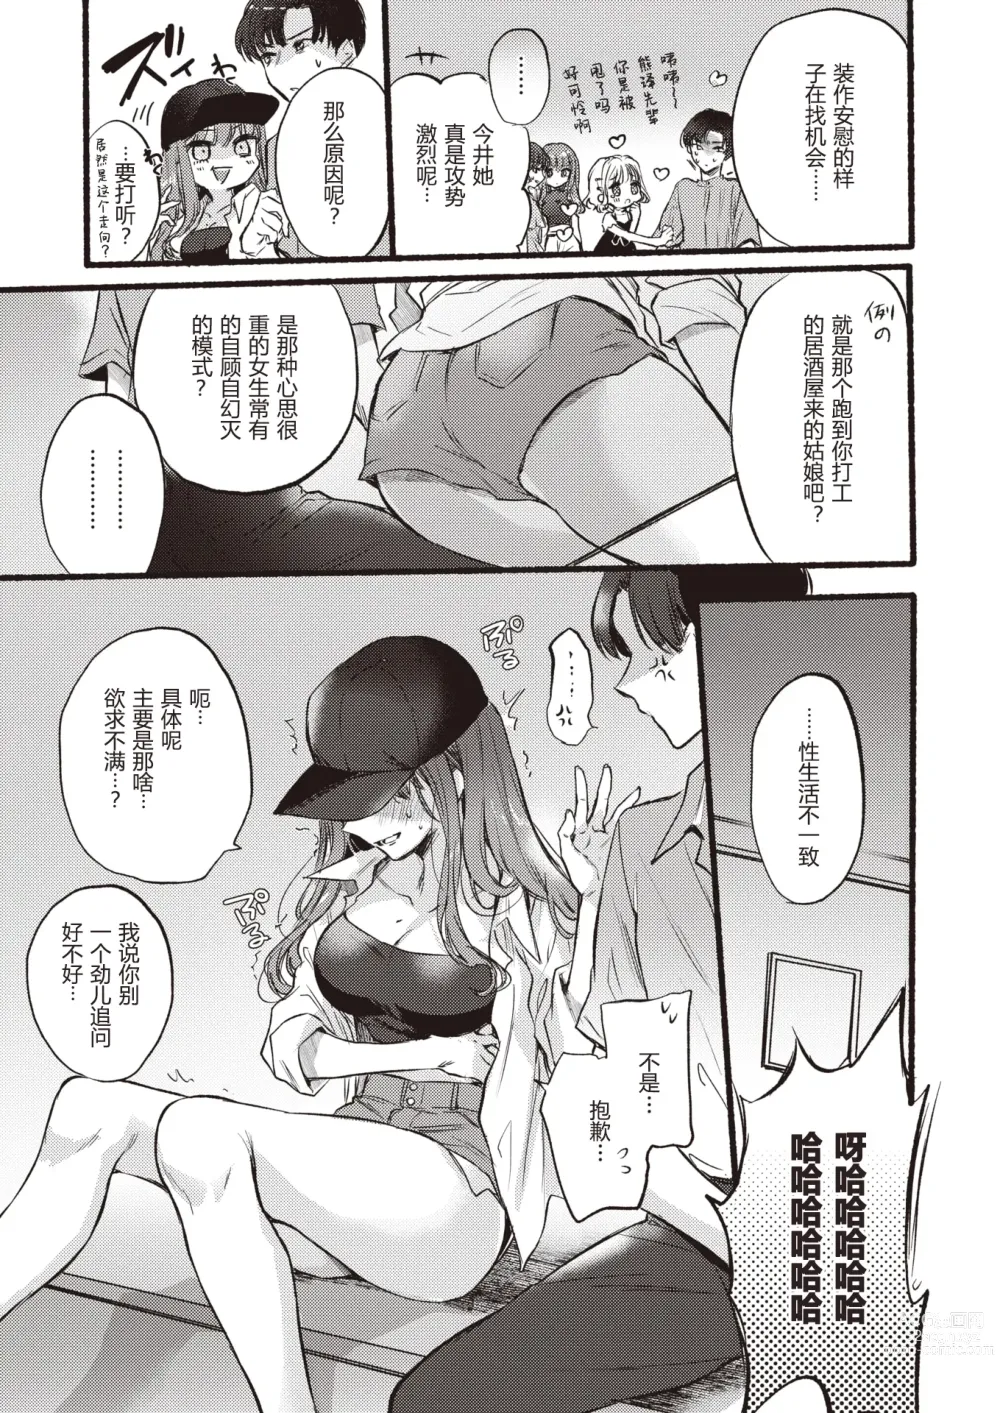 Page 4 of manga Himetomo - The secret fetish!